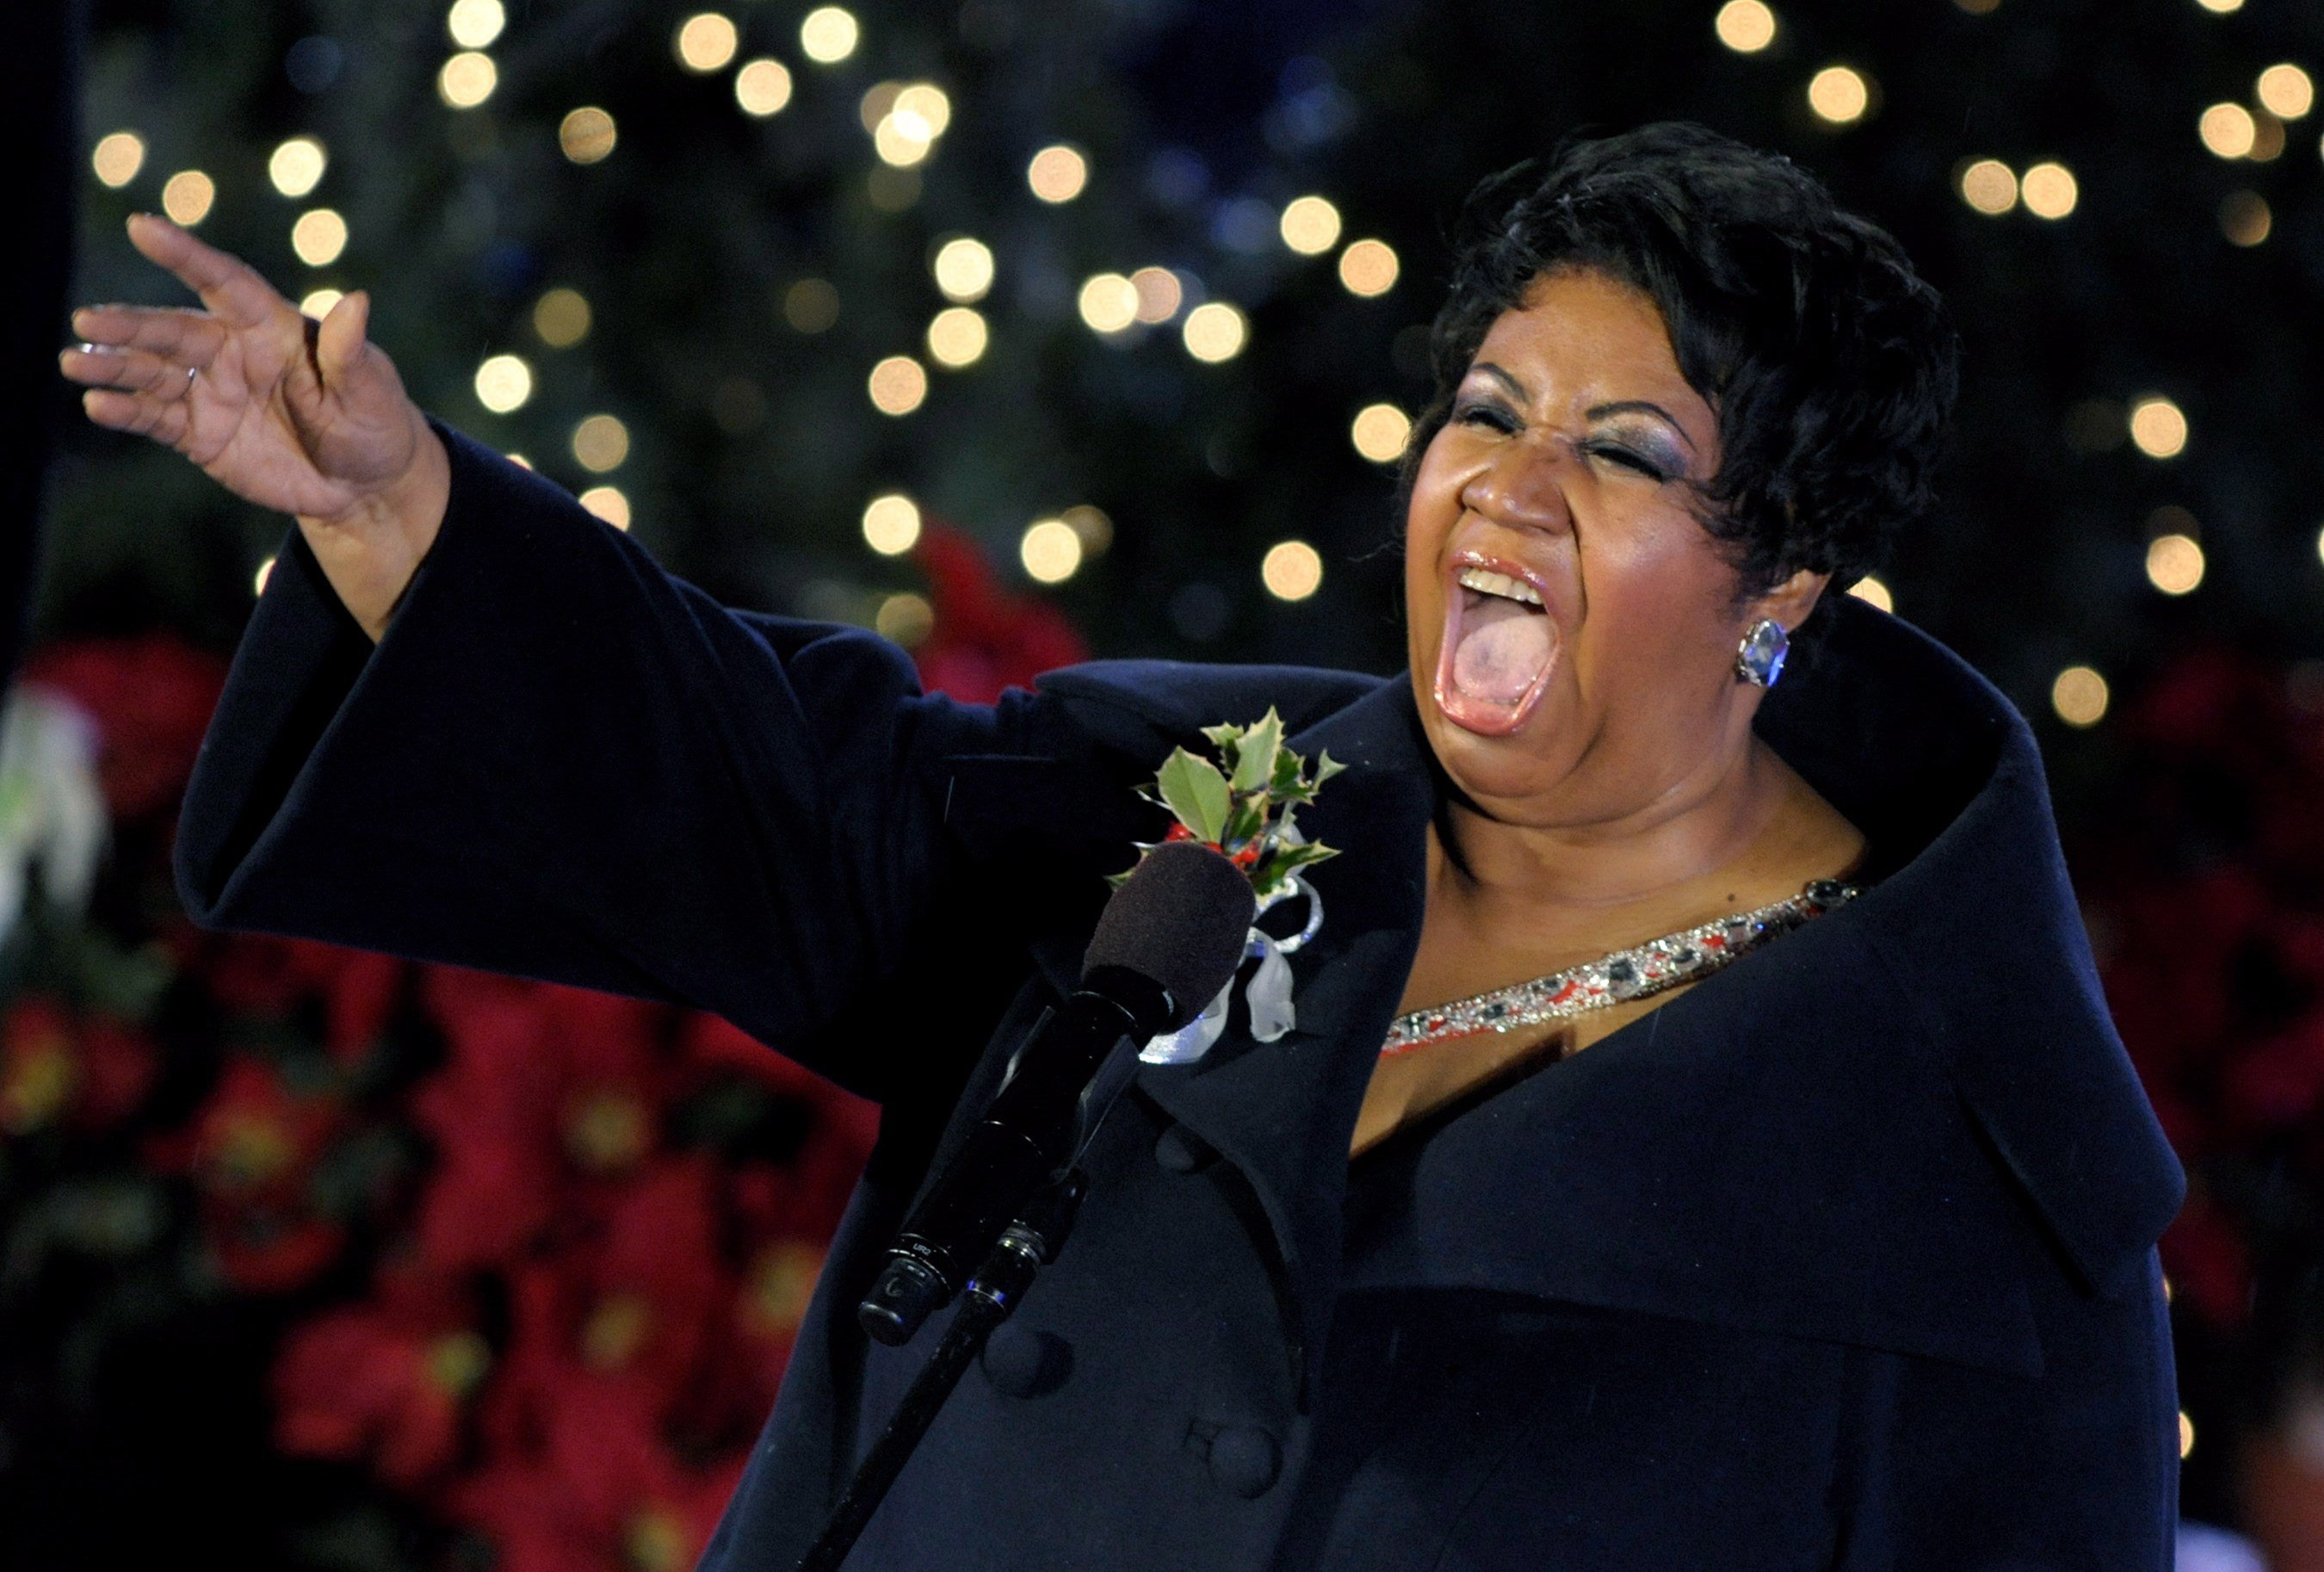 Cinc cançons d'Aretha Franklin pels drets de les dones i dels negres